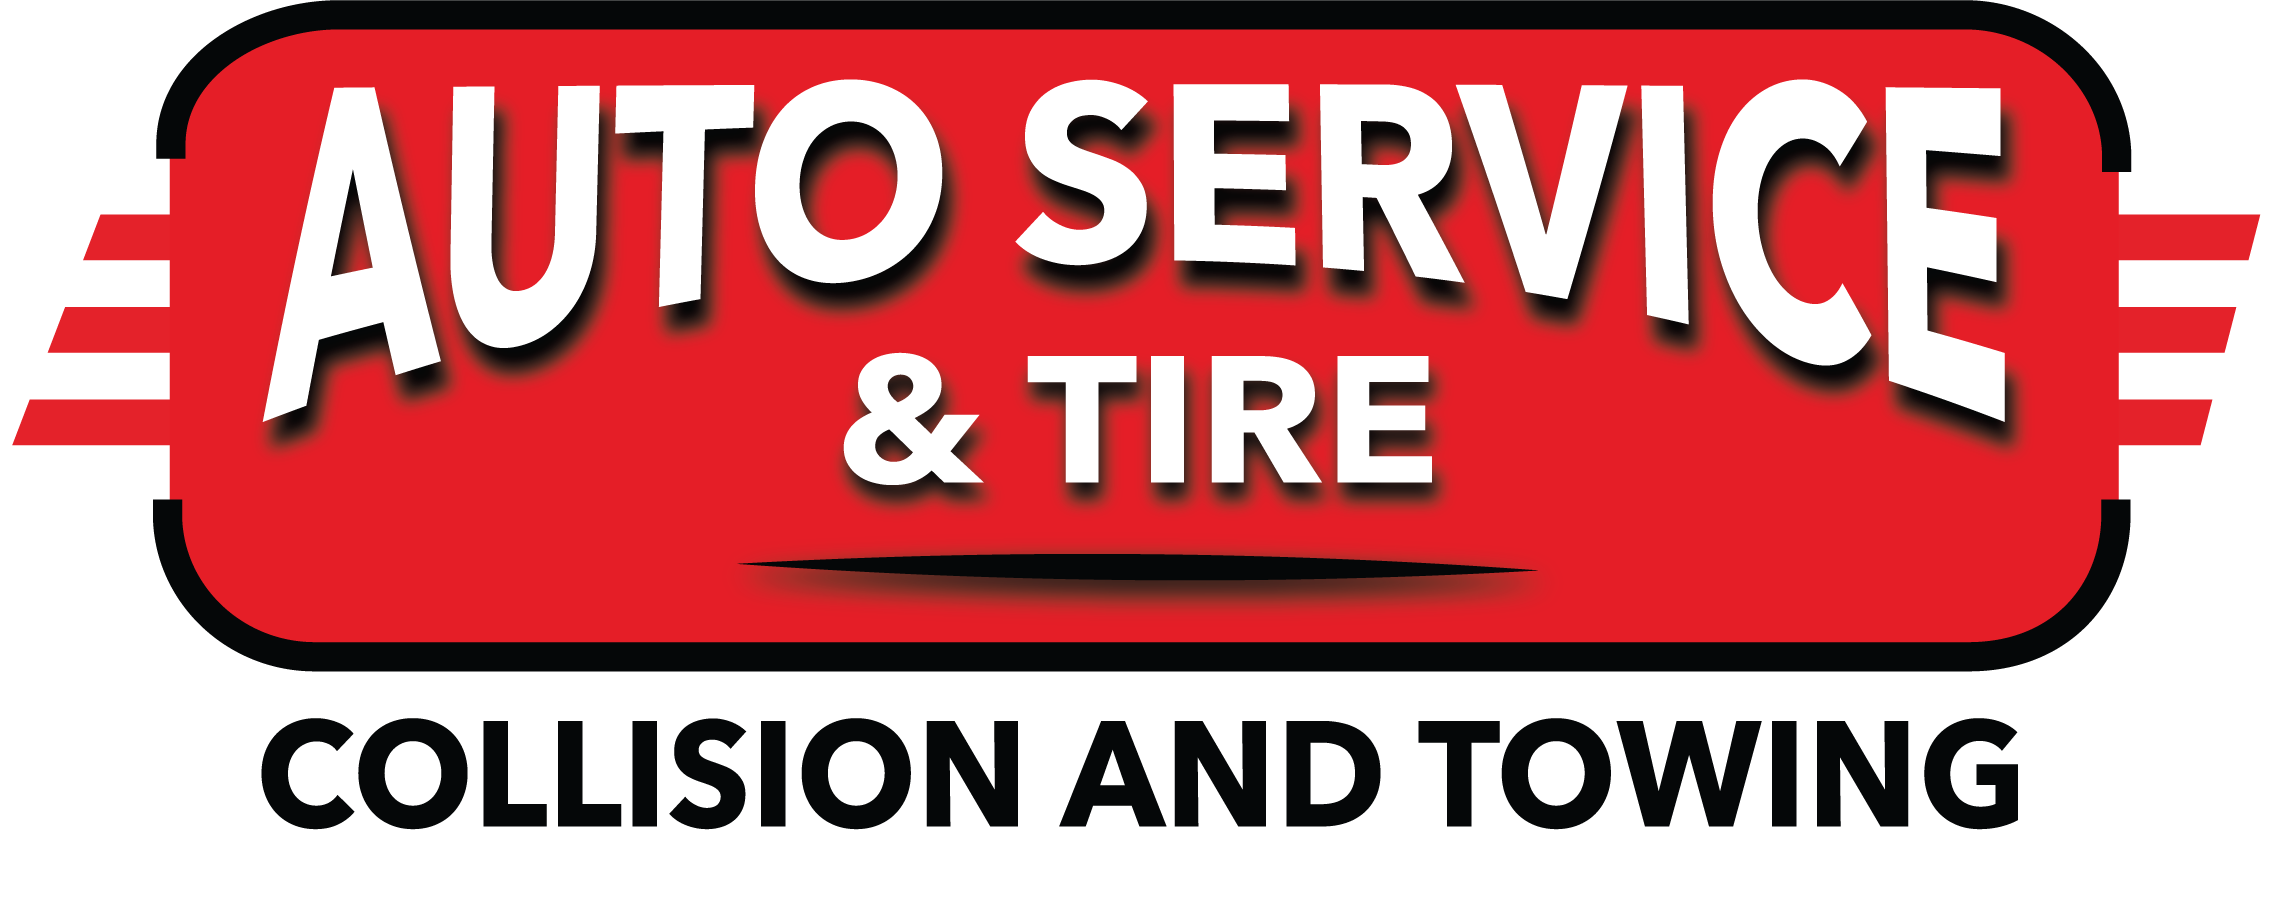 Auto Service & Tire | Towing and Collision | Boston, MA